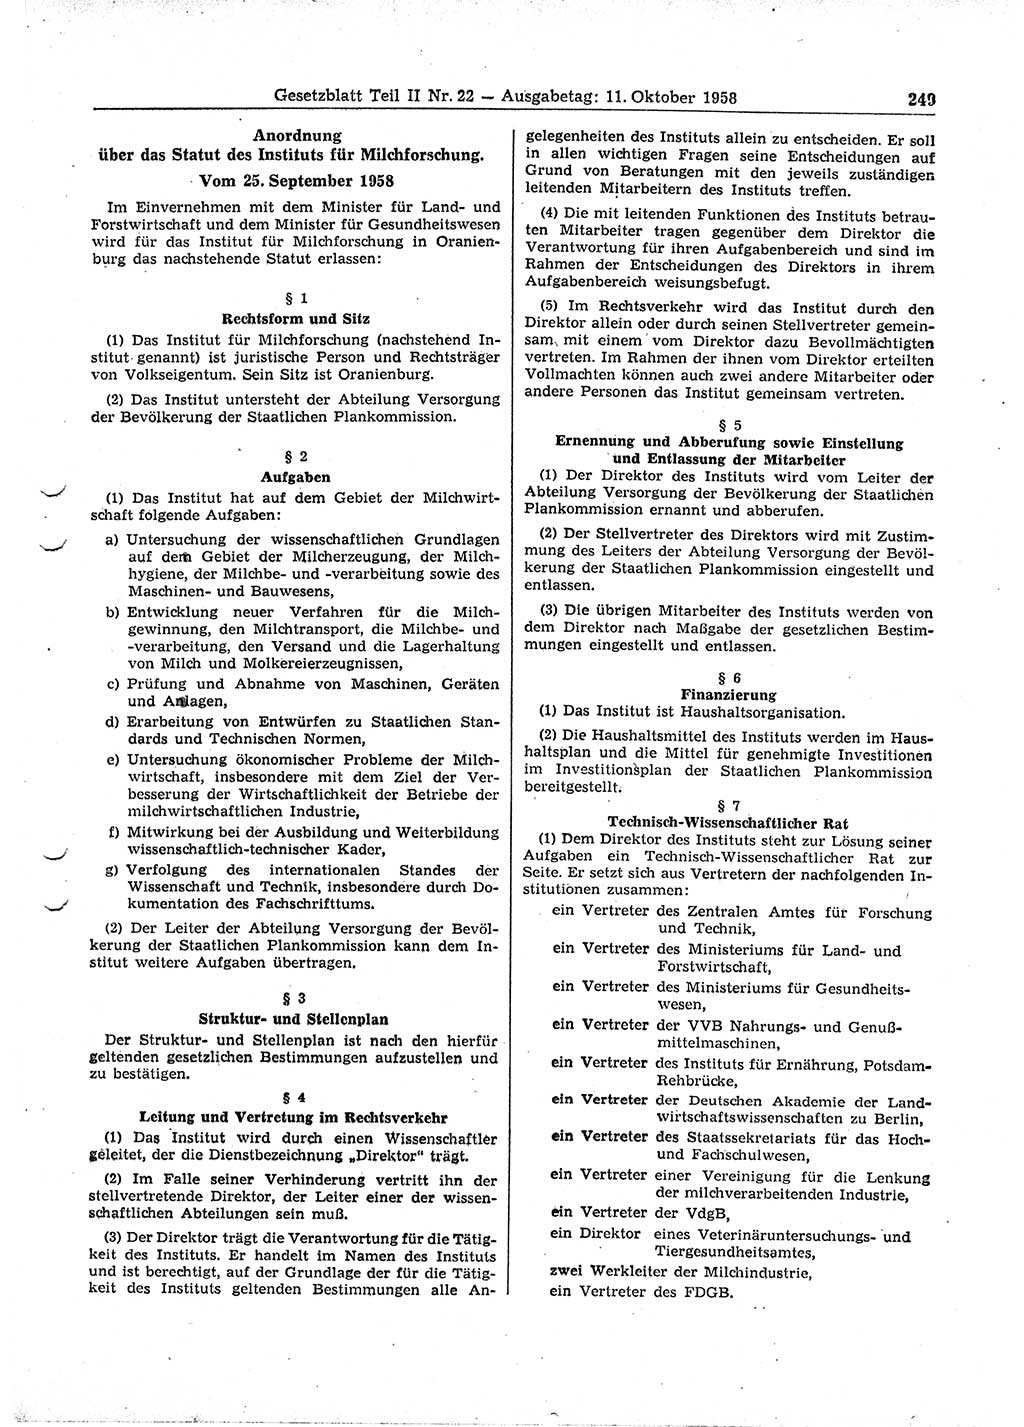 Gesetzblatt (GBl.) der Deutschen Demokratischen Republik (DDR) Teil ⅠⅠ 1958, Seite 249 (GBl. DDR ⅠⅠ 1958, S. 249)